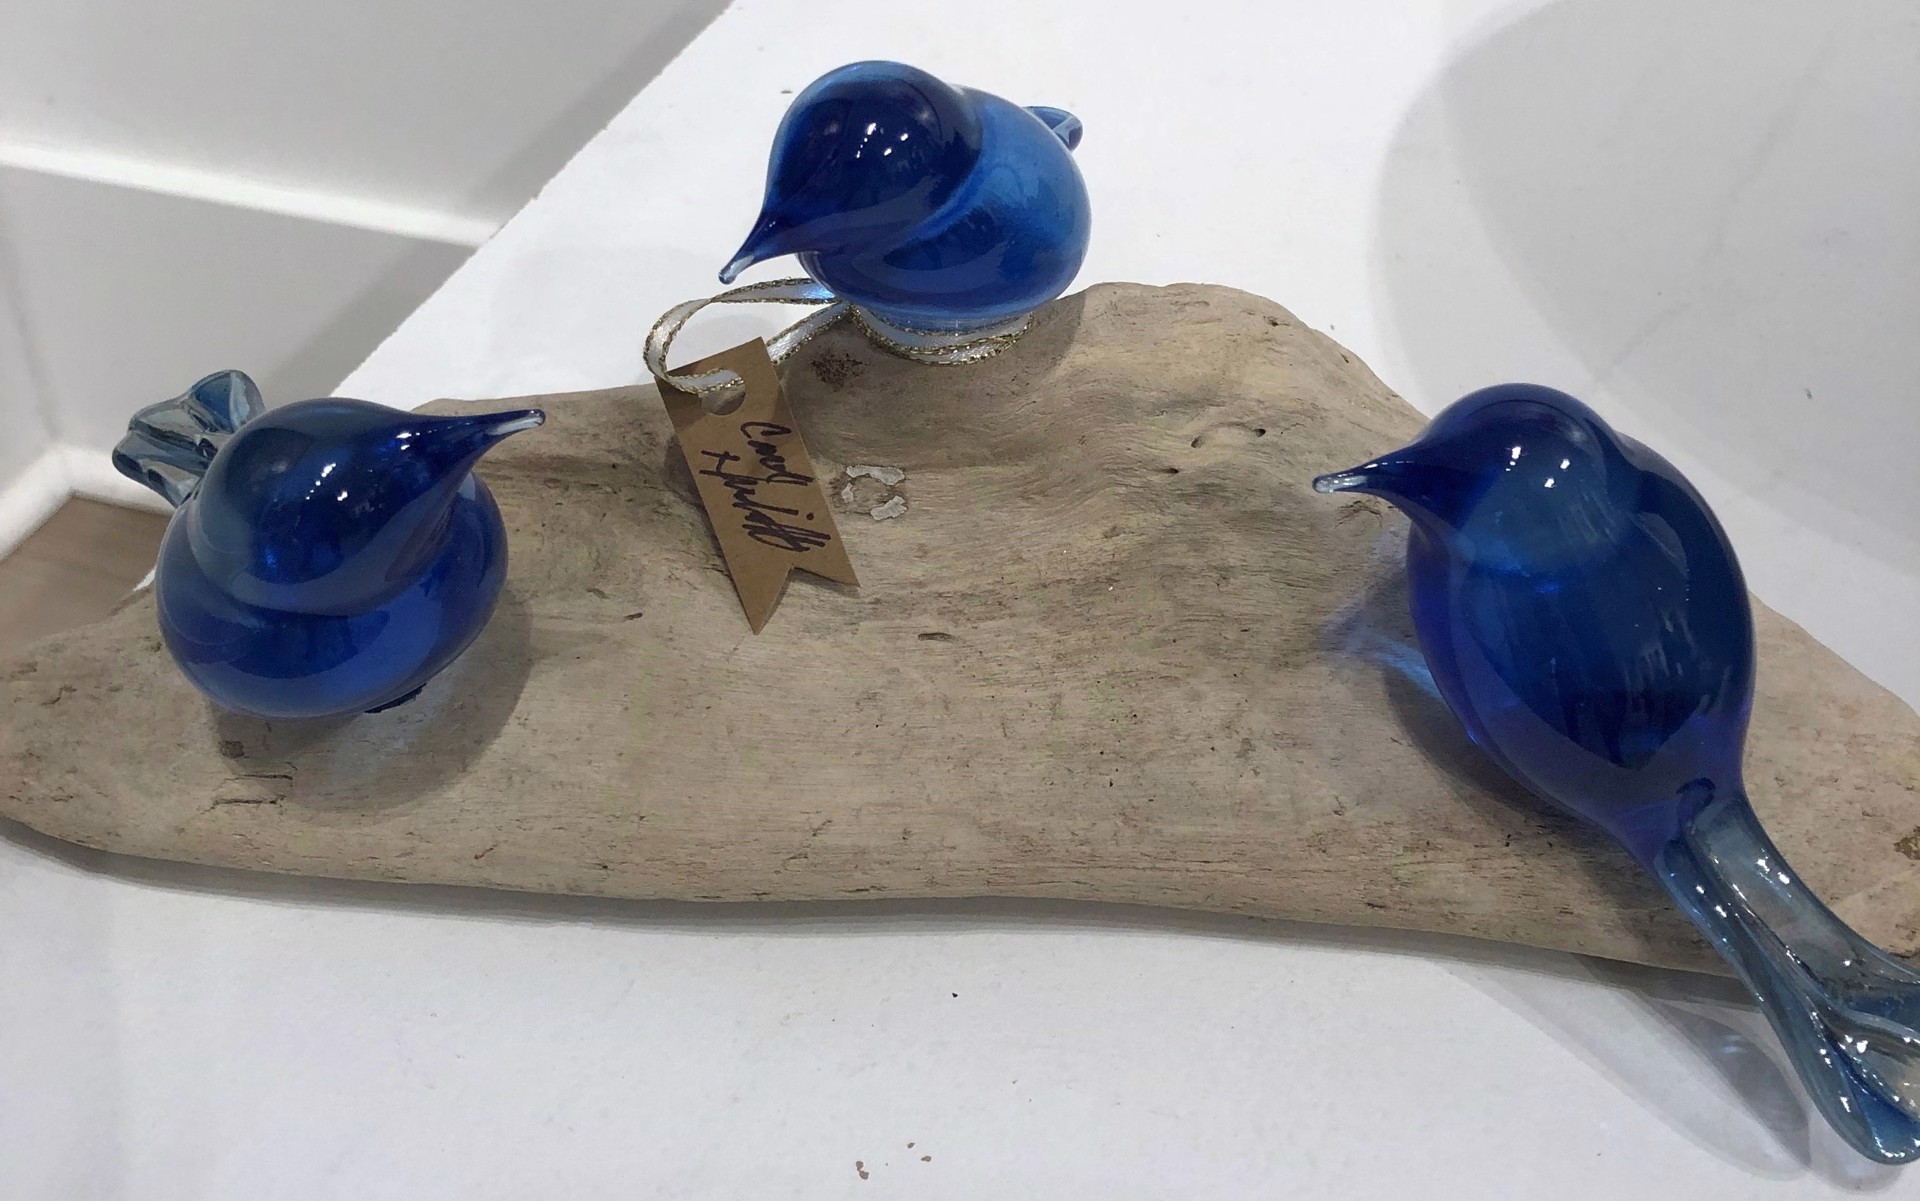 3 Medium Blue Birds - 203097 by Carol Nesbitt